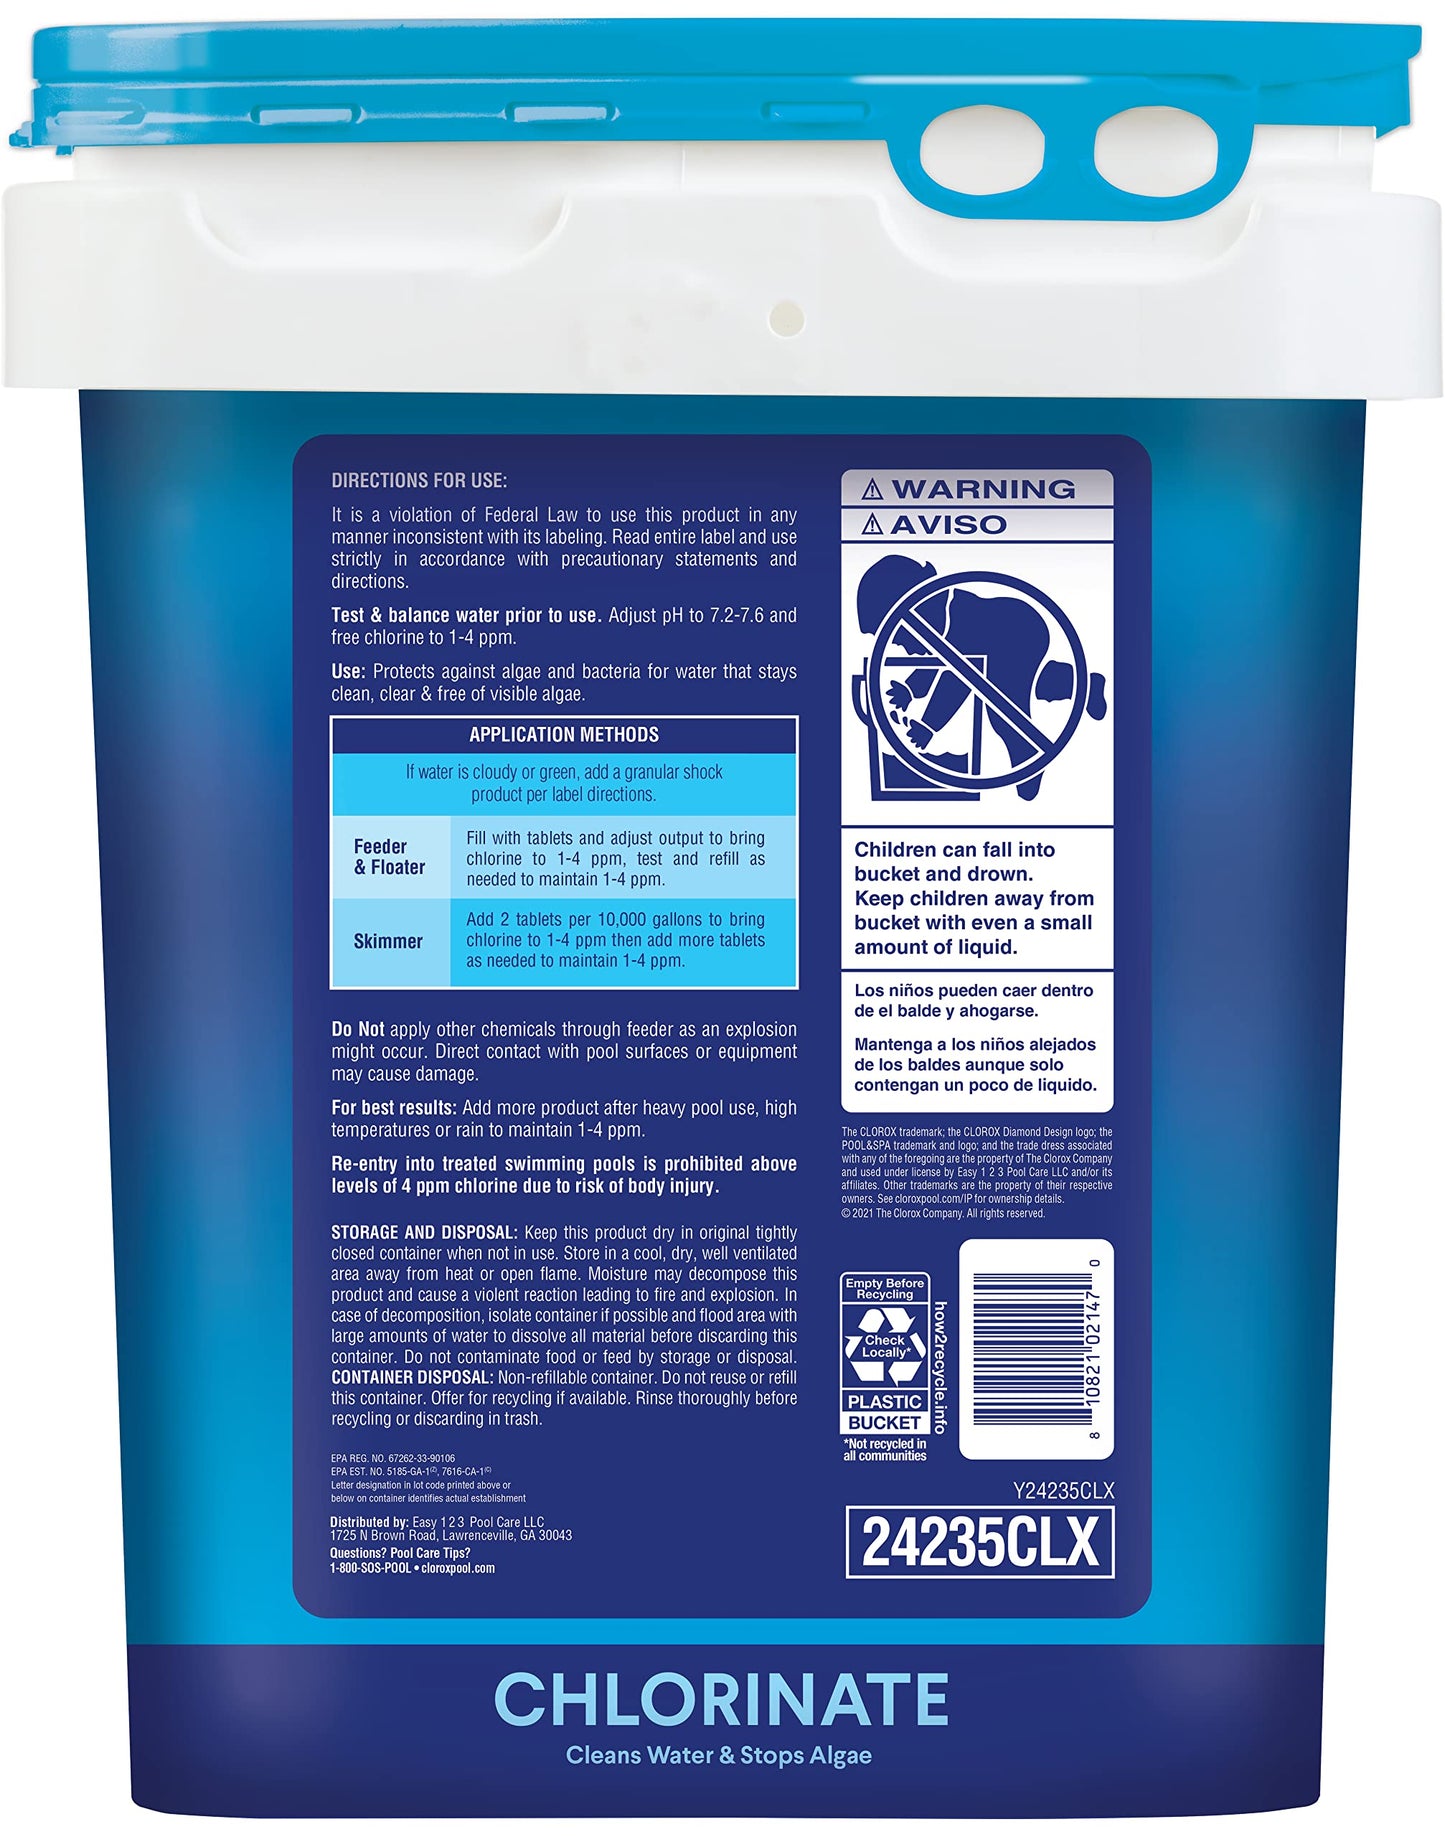 Clorox Pool&amp;Spa XtraBlue Comprimés de chloration longue durée 3 po 35 lb